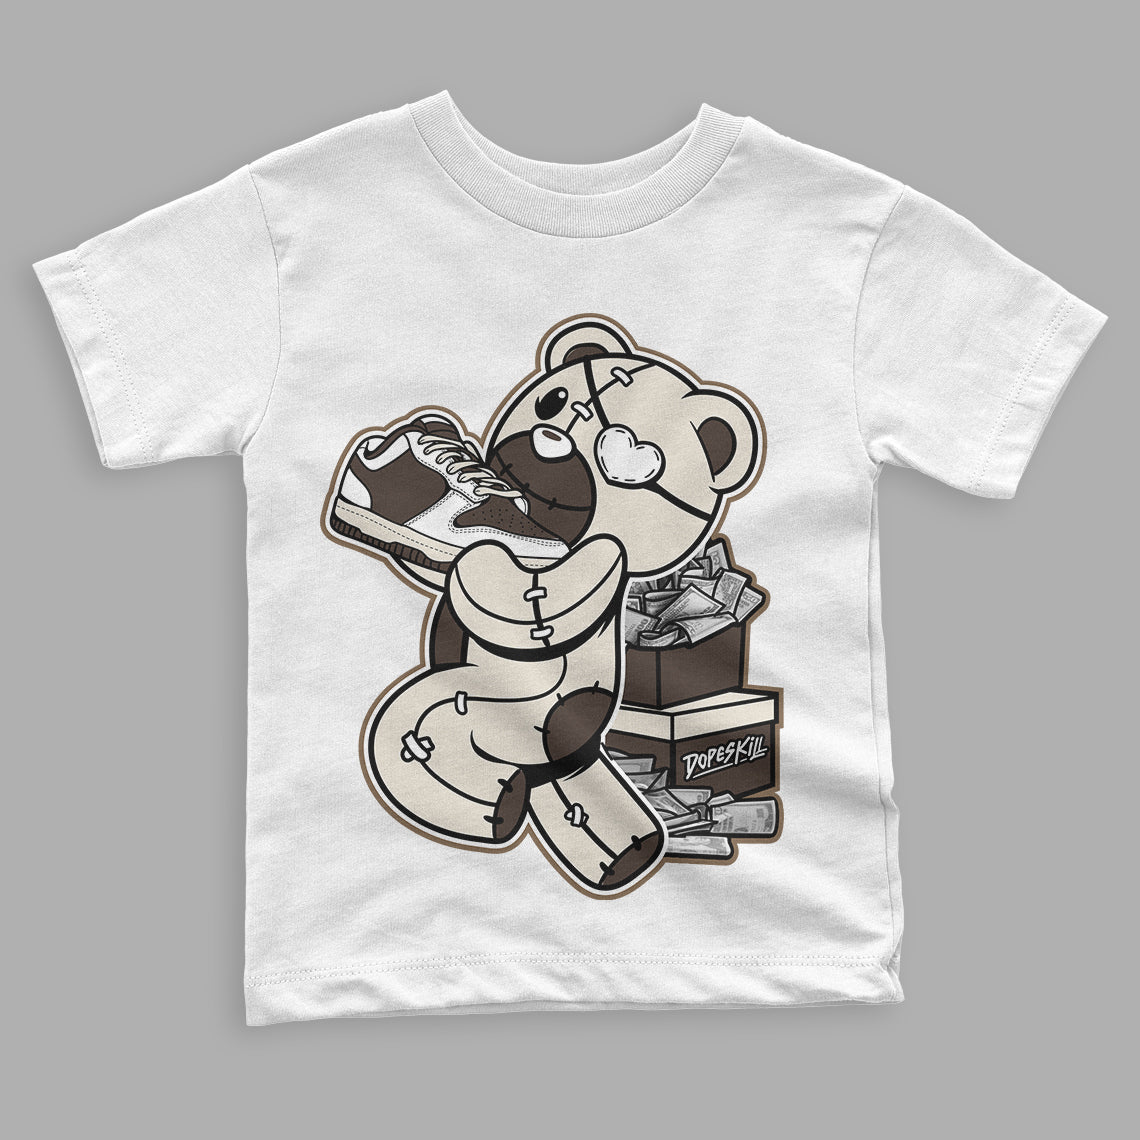 OG Reverse Mocha 1s Low DopeSkill Toddler Kids T-shirt Bear Steals Sneaker Graphic - White